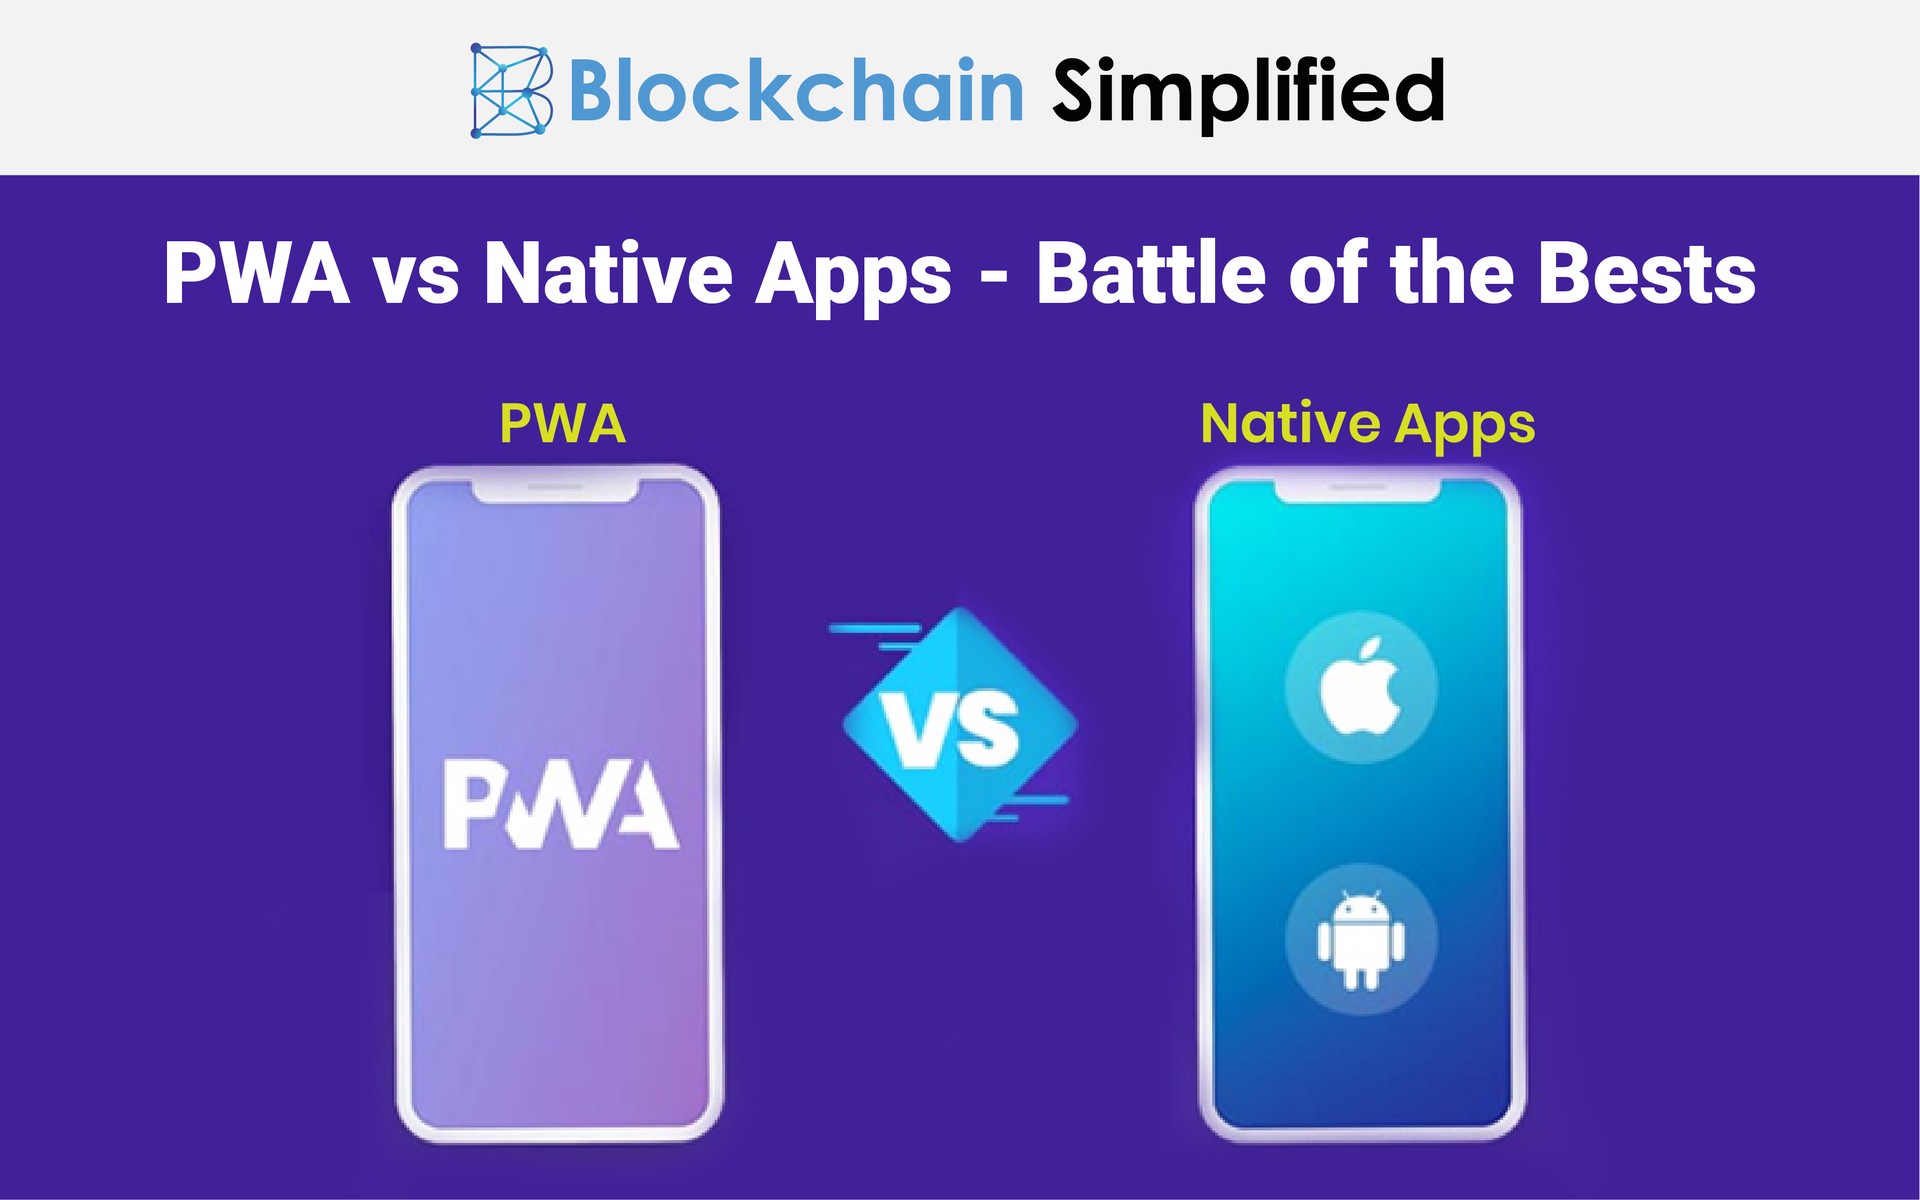 PWA vs Native